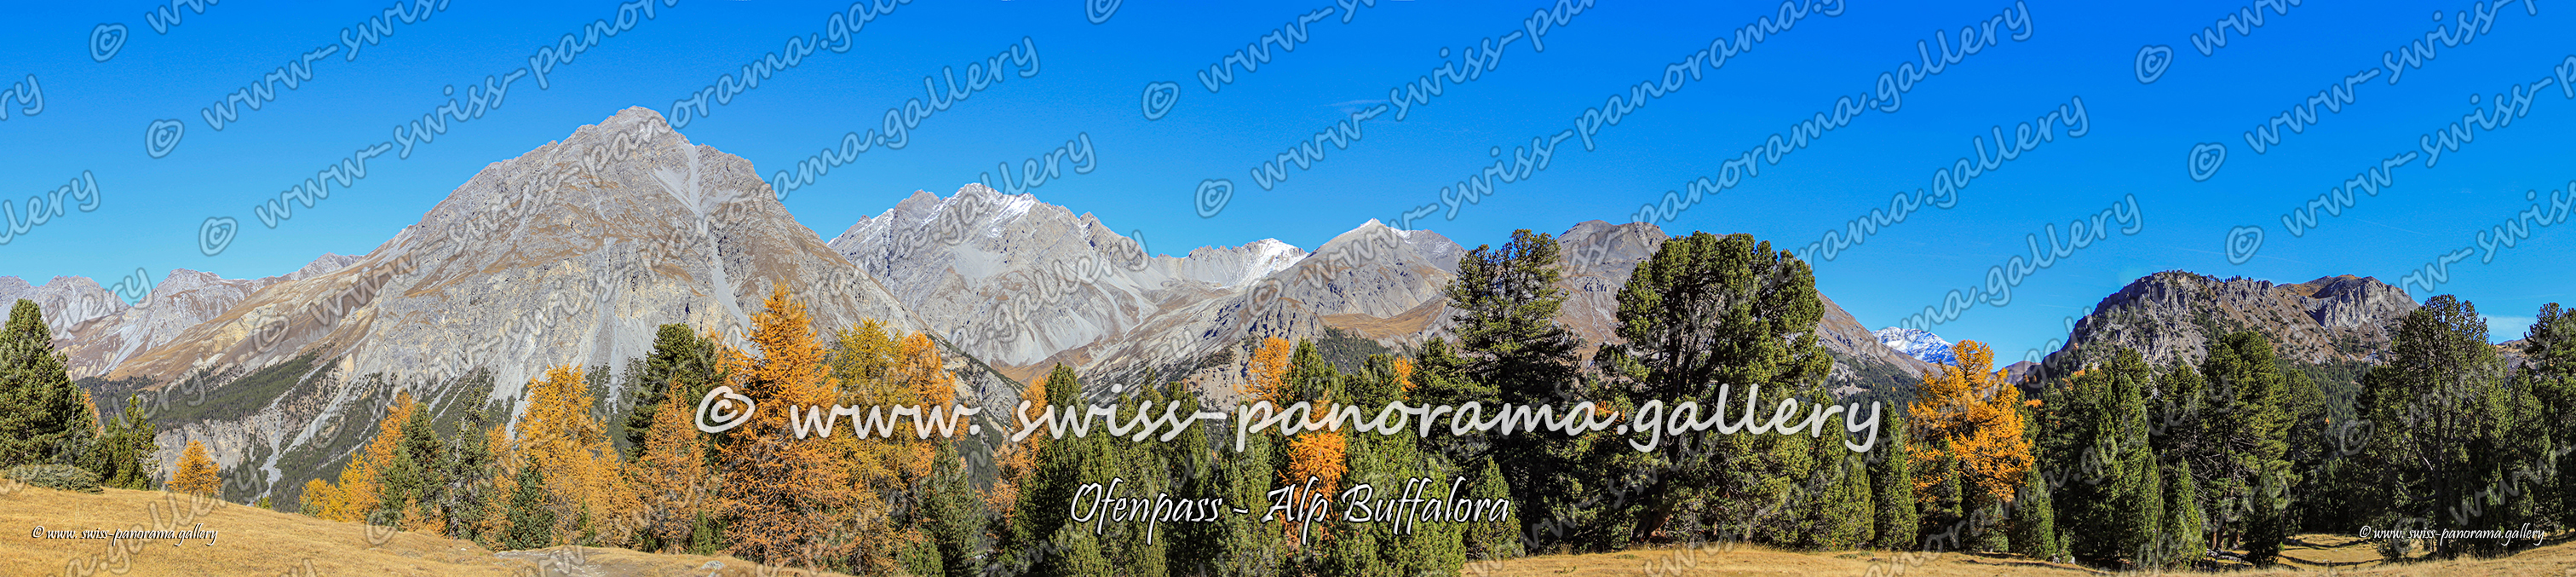 Panorama Ofenpass Alp Buffalora, Piz Nair, swisspanorama.gallery 